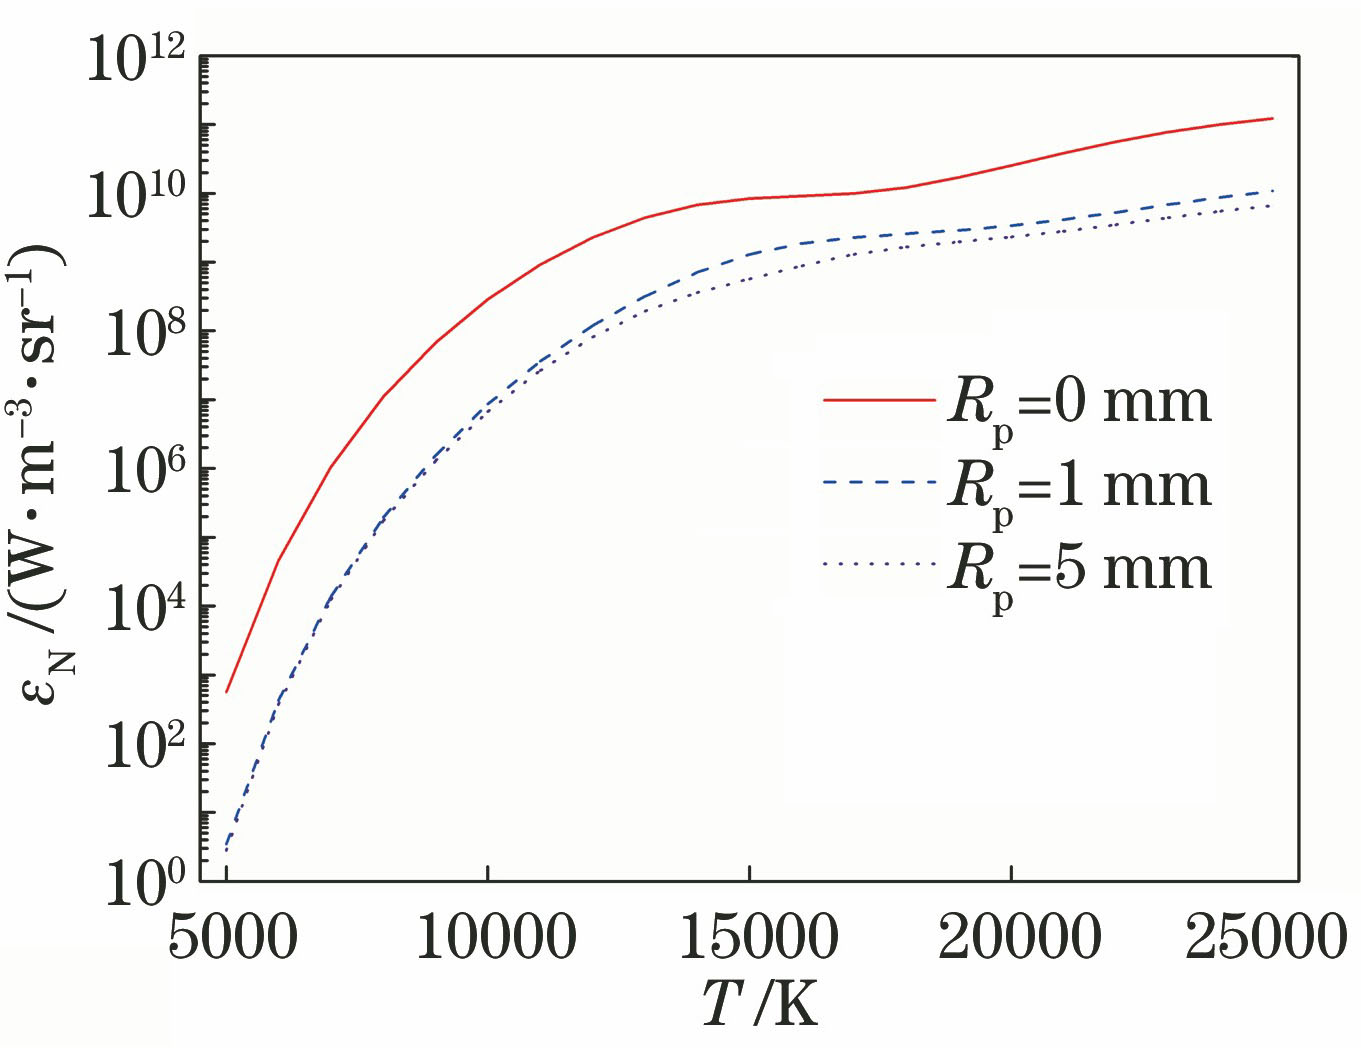 Full spectrum net emission coefficients of argon plasmas